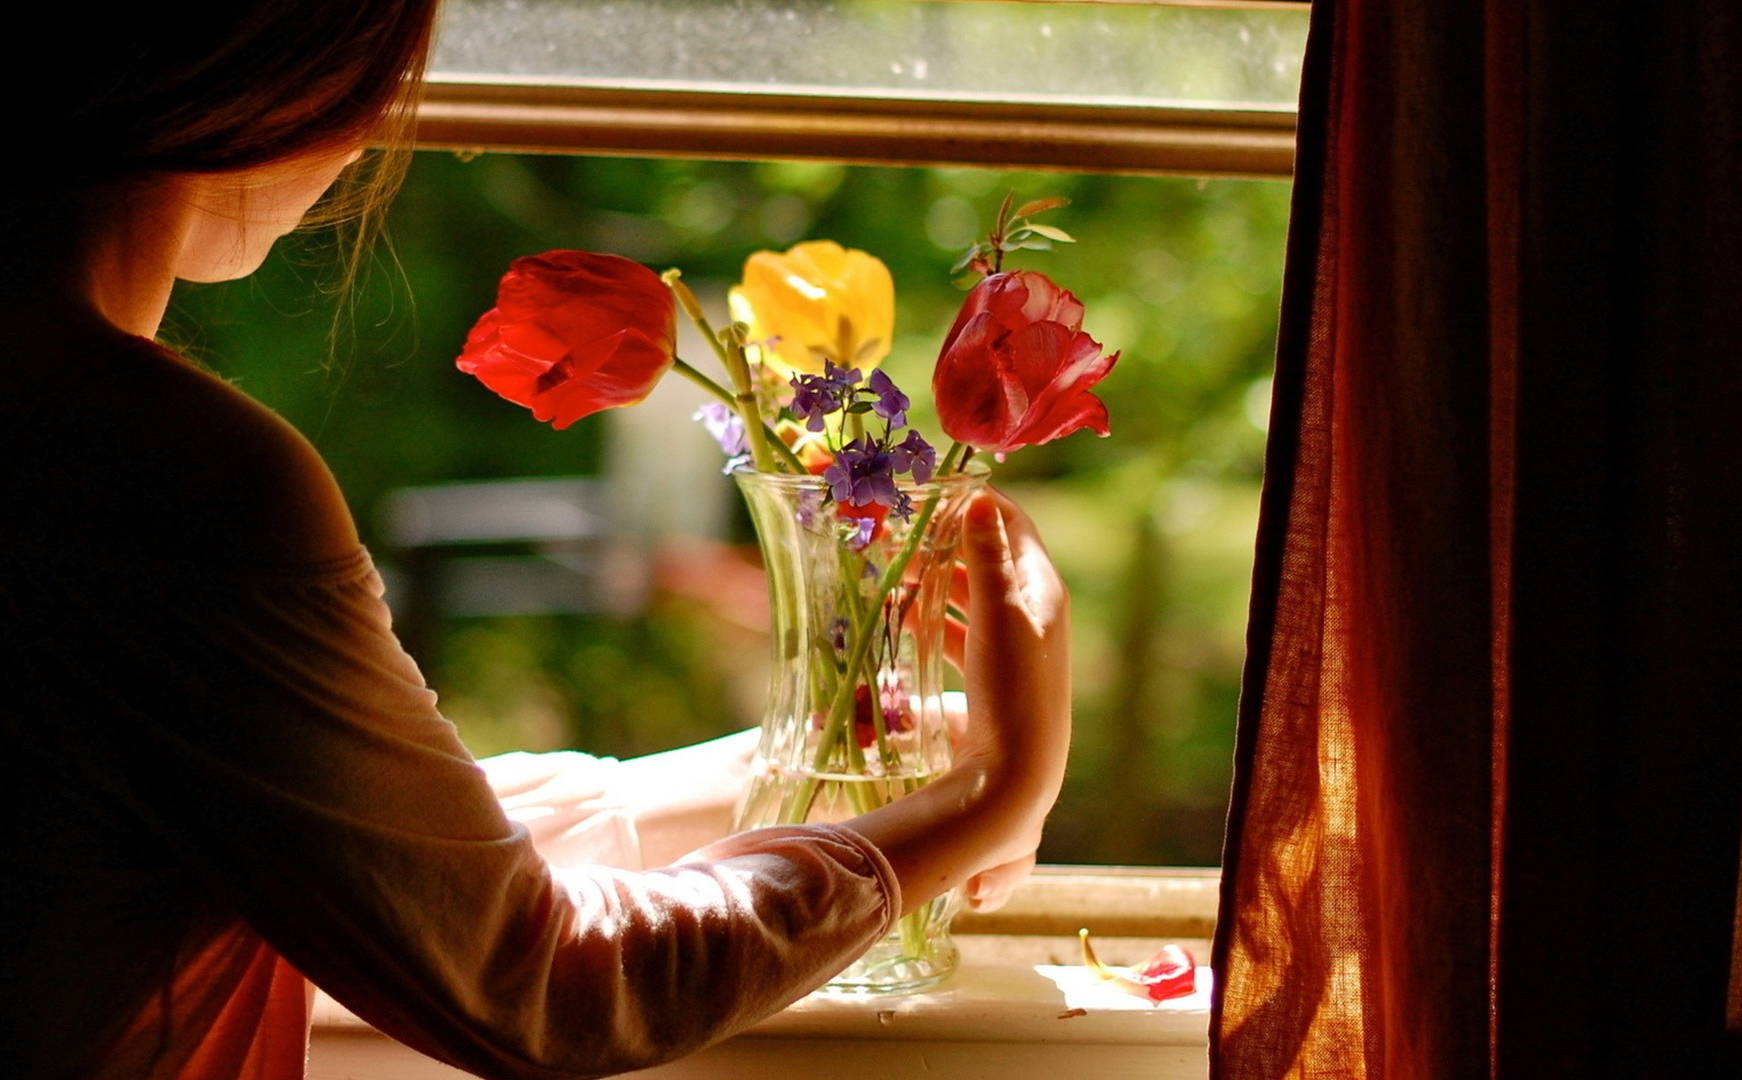 Цветы на окне. Девушка с цветами возле окна. Окно с цветами. Цветы на подоконнике вечером. Дом где есть счастье